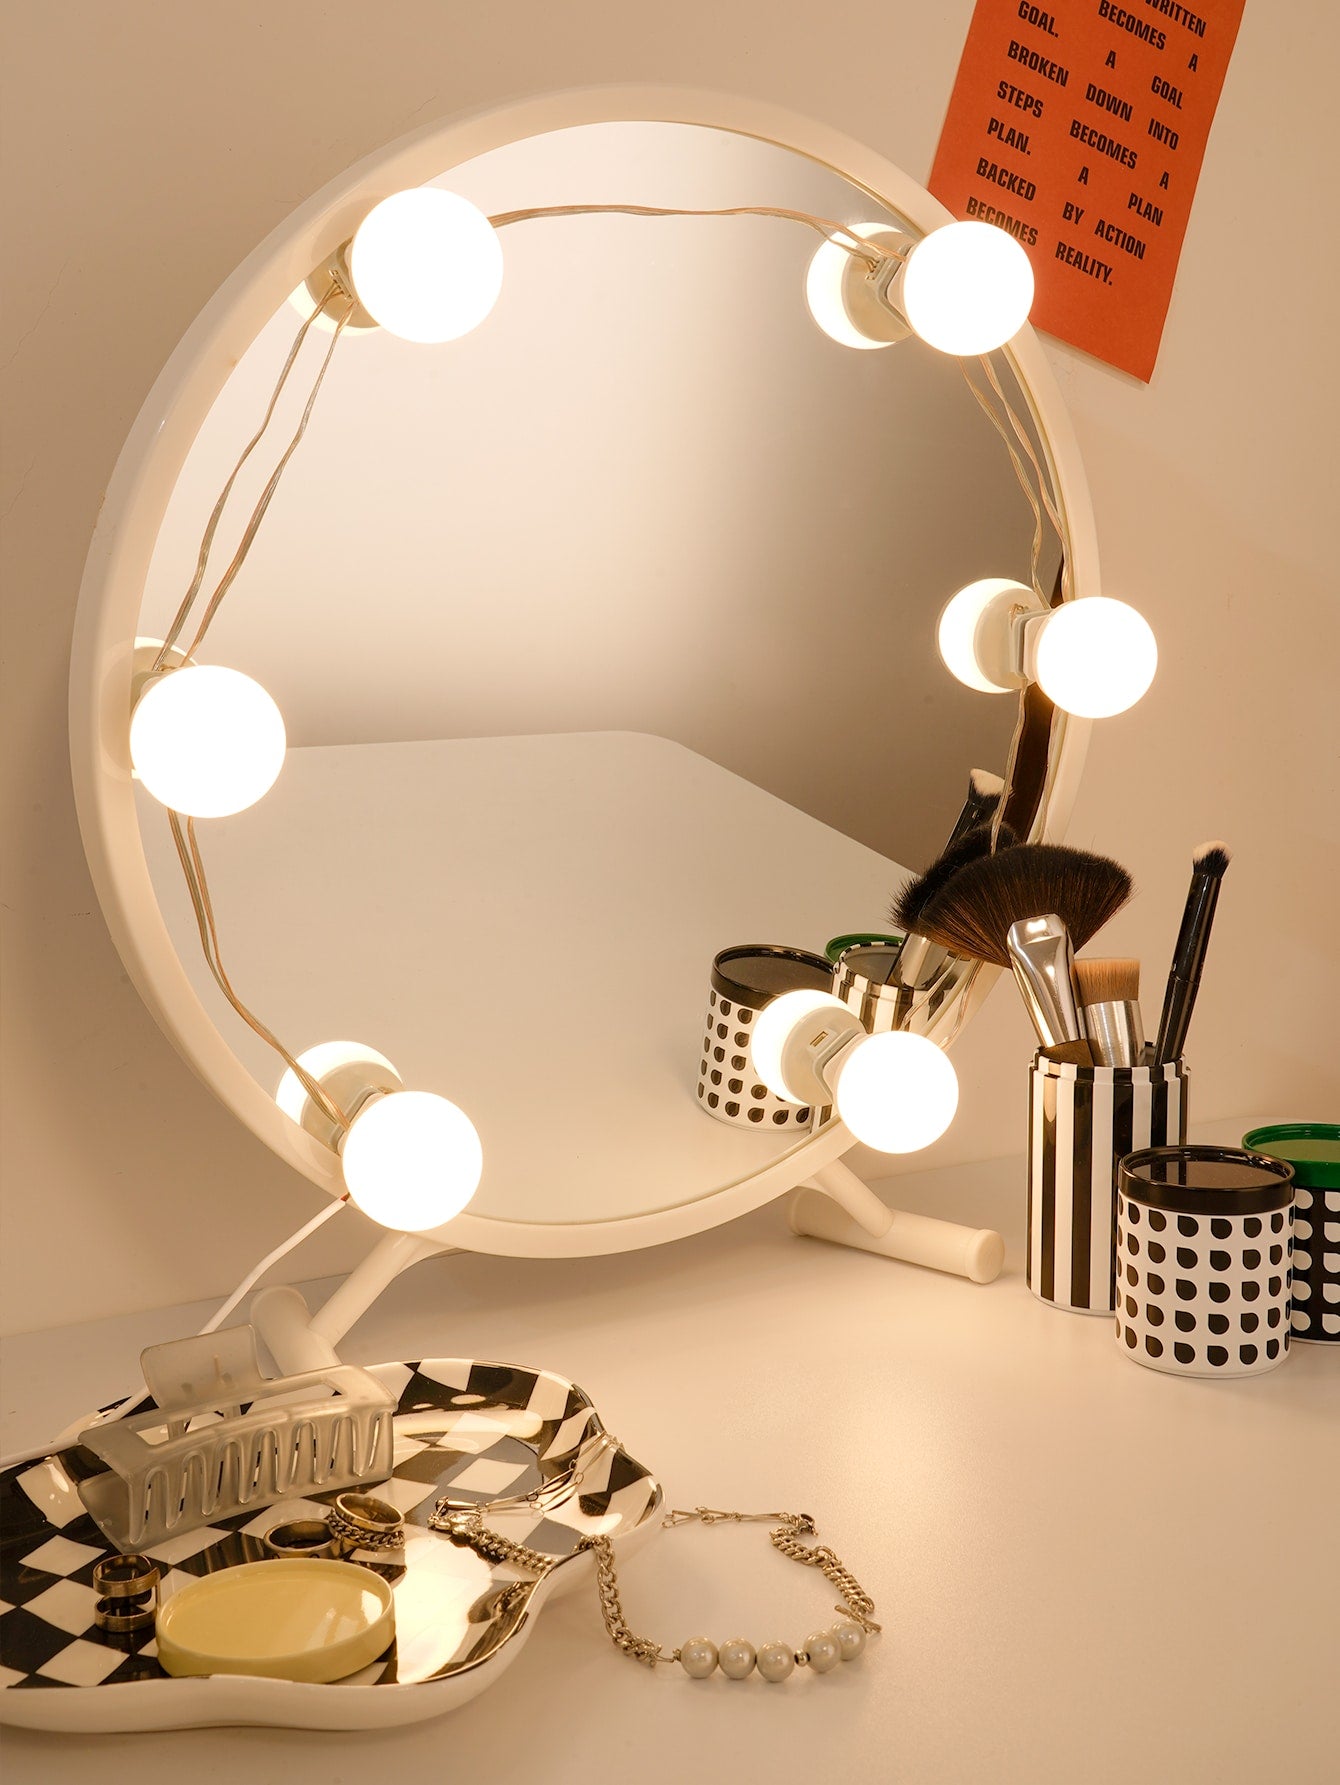 BASIC LIVING 6 LED Light Bulbs Vanity Mirror String Light